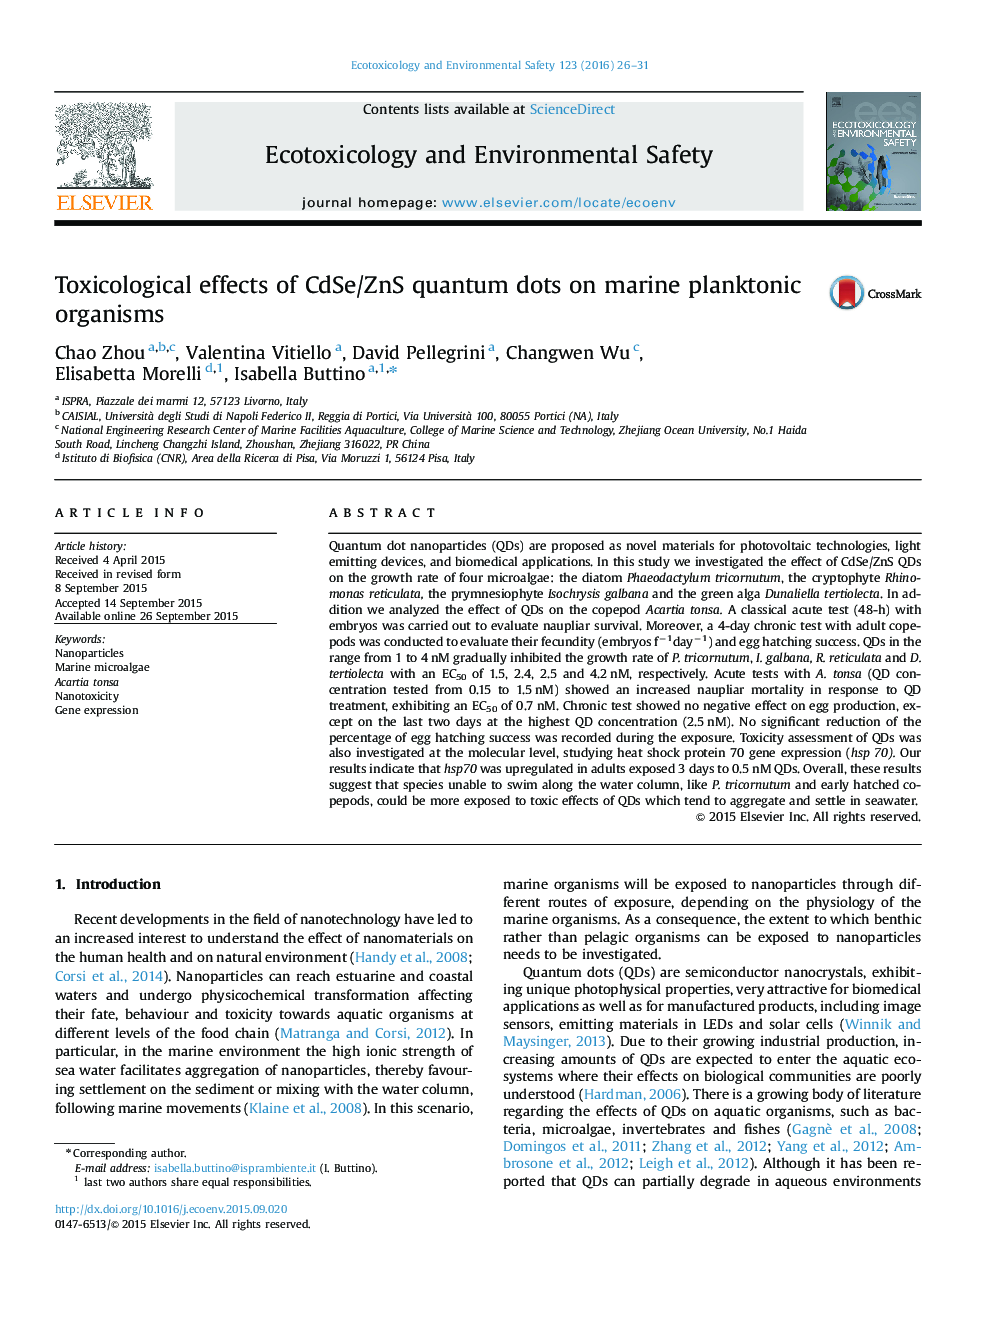 اثرات سم شناسی نقاط کوانتومی CdSe / ZnS بر موجودات پلانکتونی دریایی